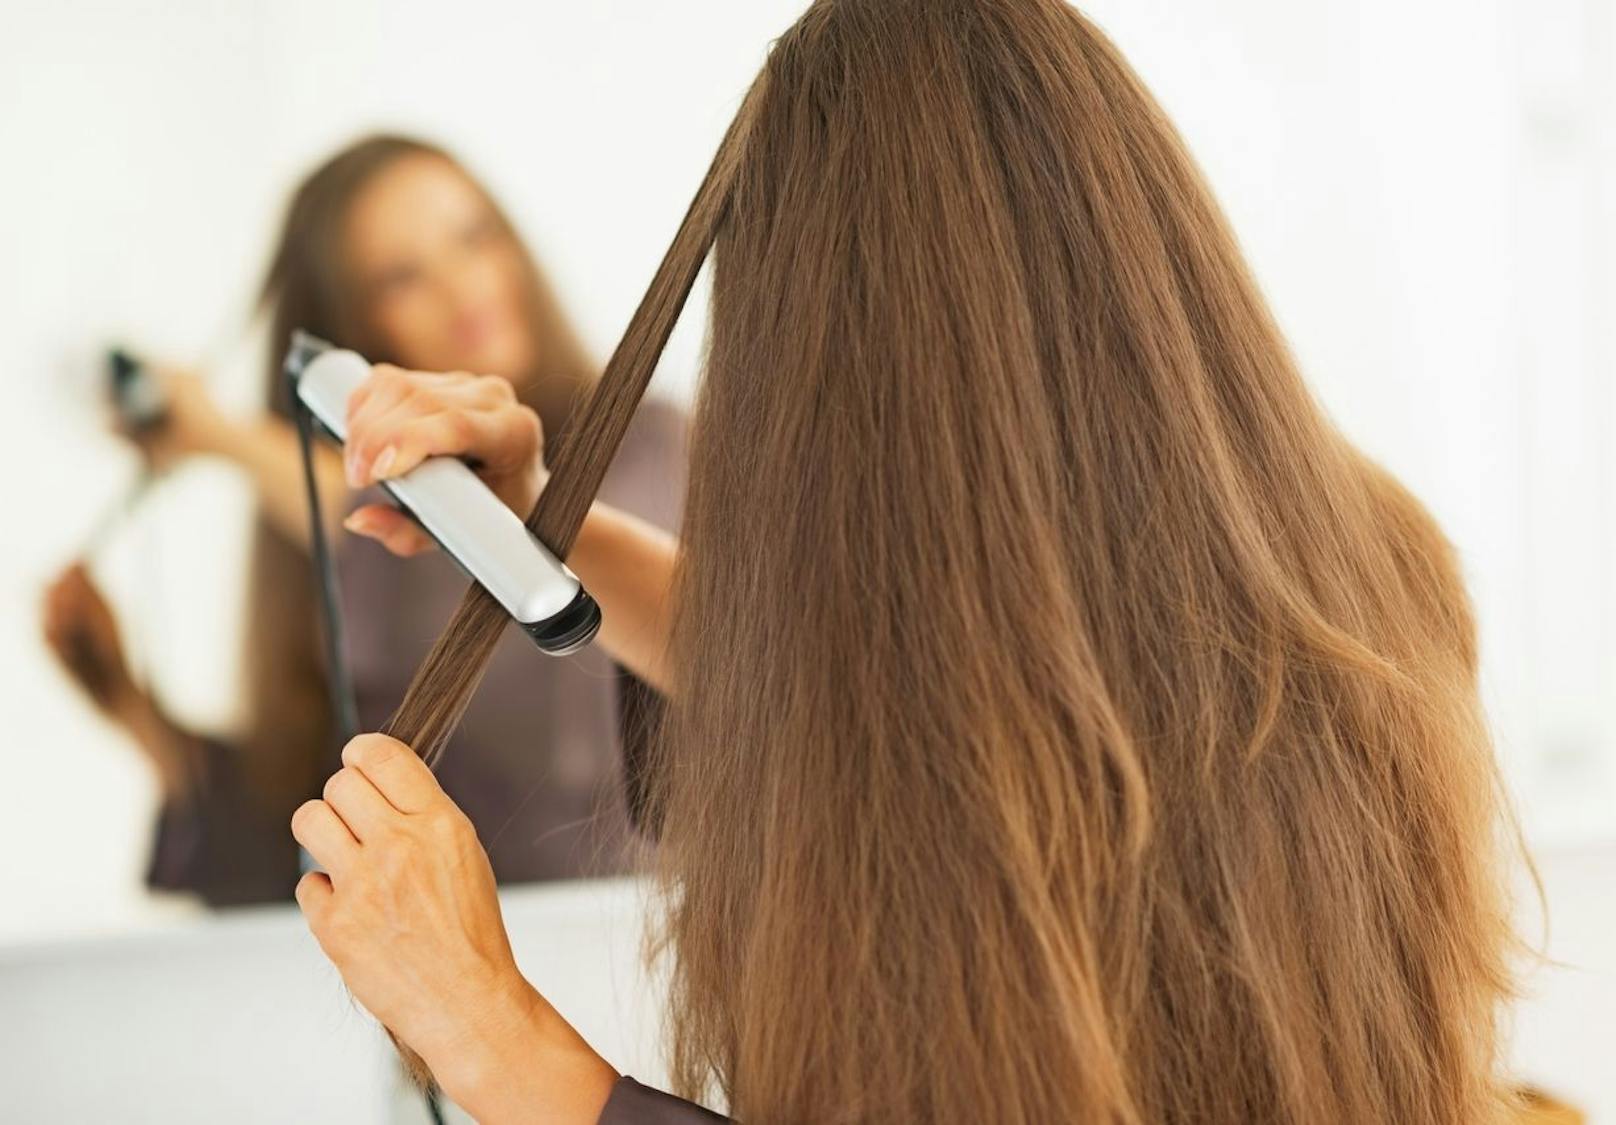 Auch das Glätten kann problematisch sein, wenn du deine Haare jeden Tag der Hitze aussetzt. Um deine Haarstruktur nicht weiter zu schwächen, solltest du dir am besten einfache Frisuren überlegen, die auch mit nicht geglättetem Haar gut aussehen. 